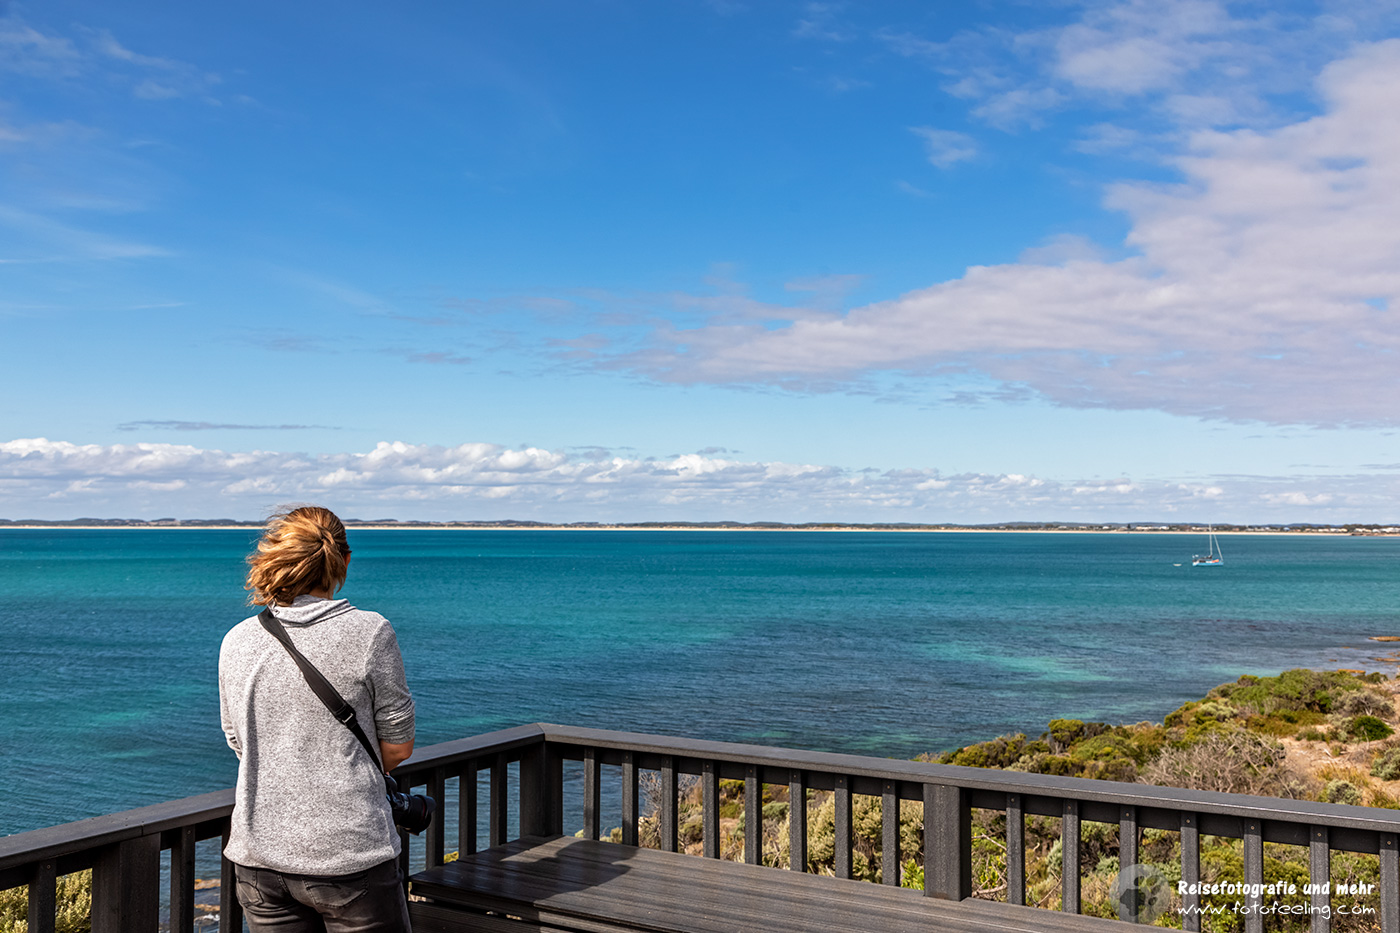 Andrea auf einem Aussichtspunkt, Robe, South Australia, Australien